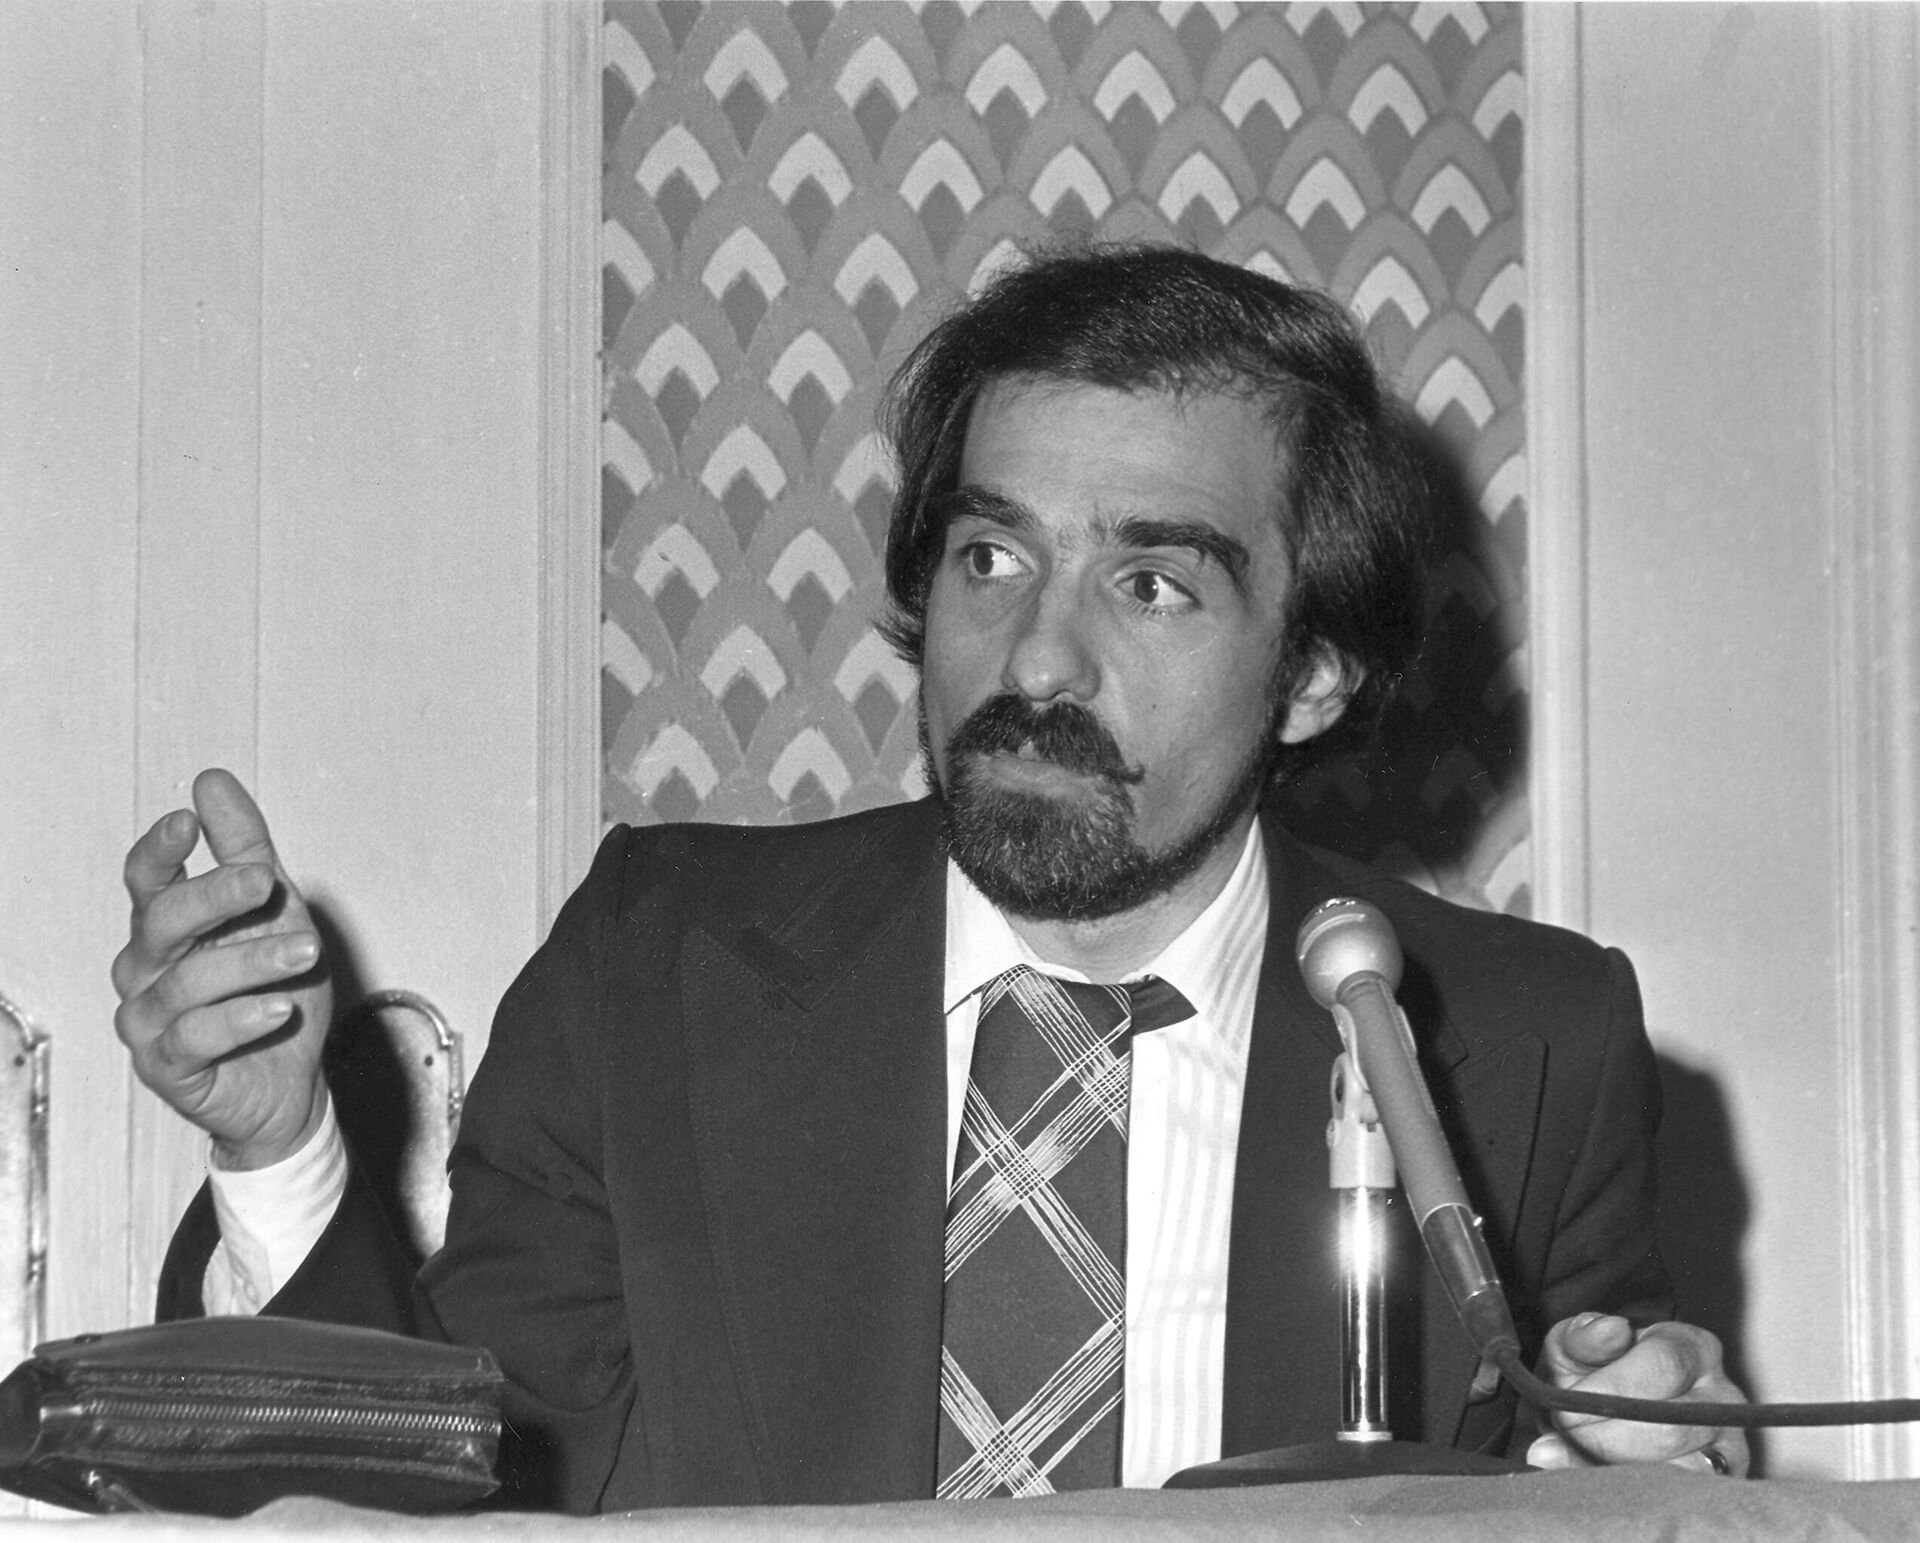 Режиссер Мартин Скорсезе на пресс-конференции в Нью-Йорке, 1977 год - Sputnik Беларусь, 1920, 16.11.2022